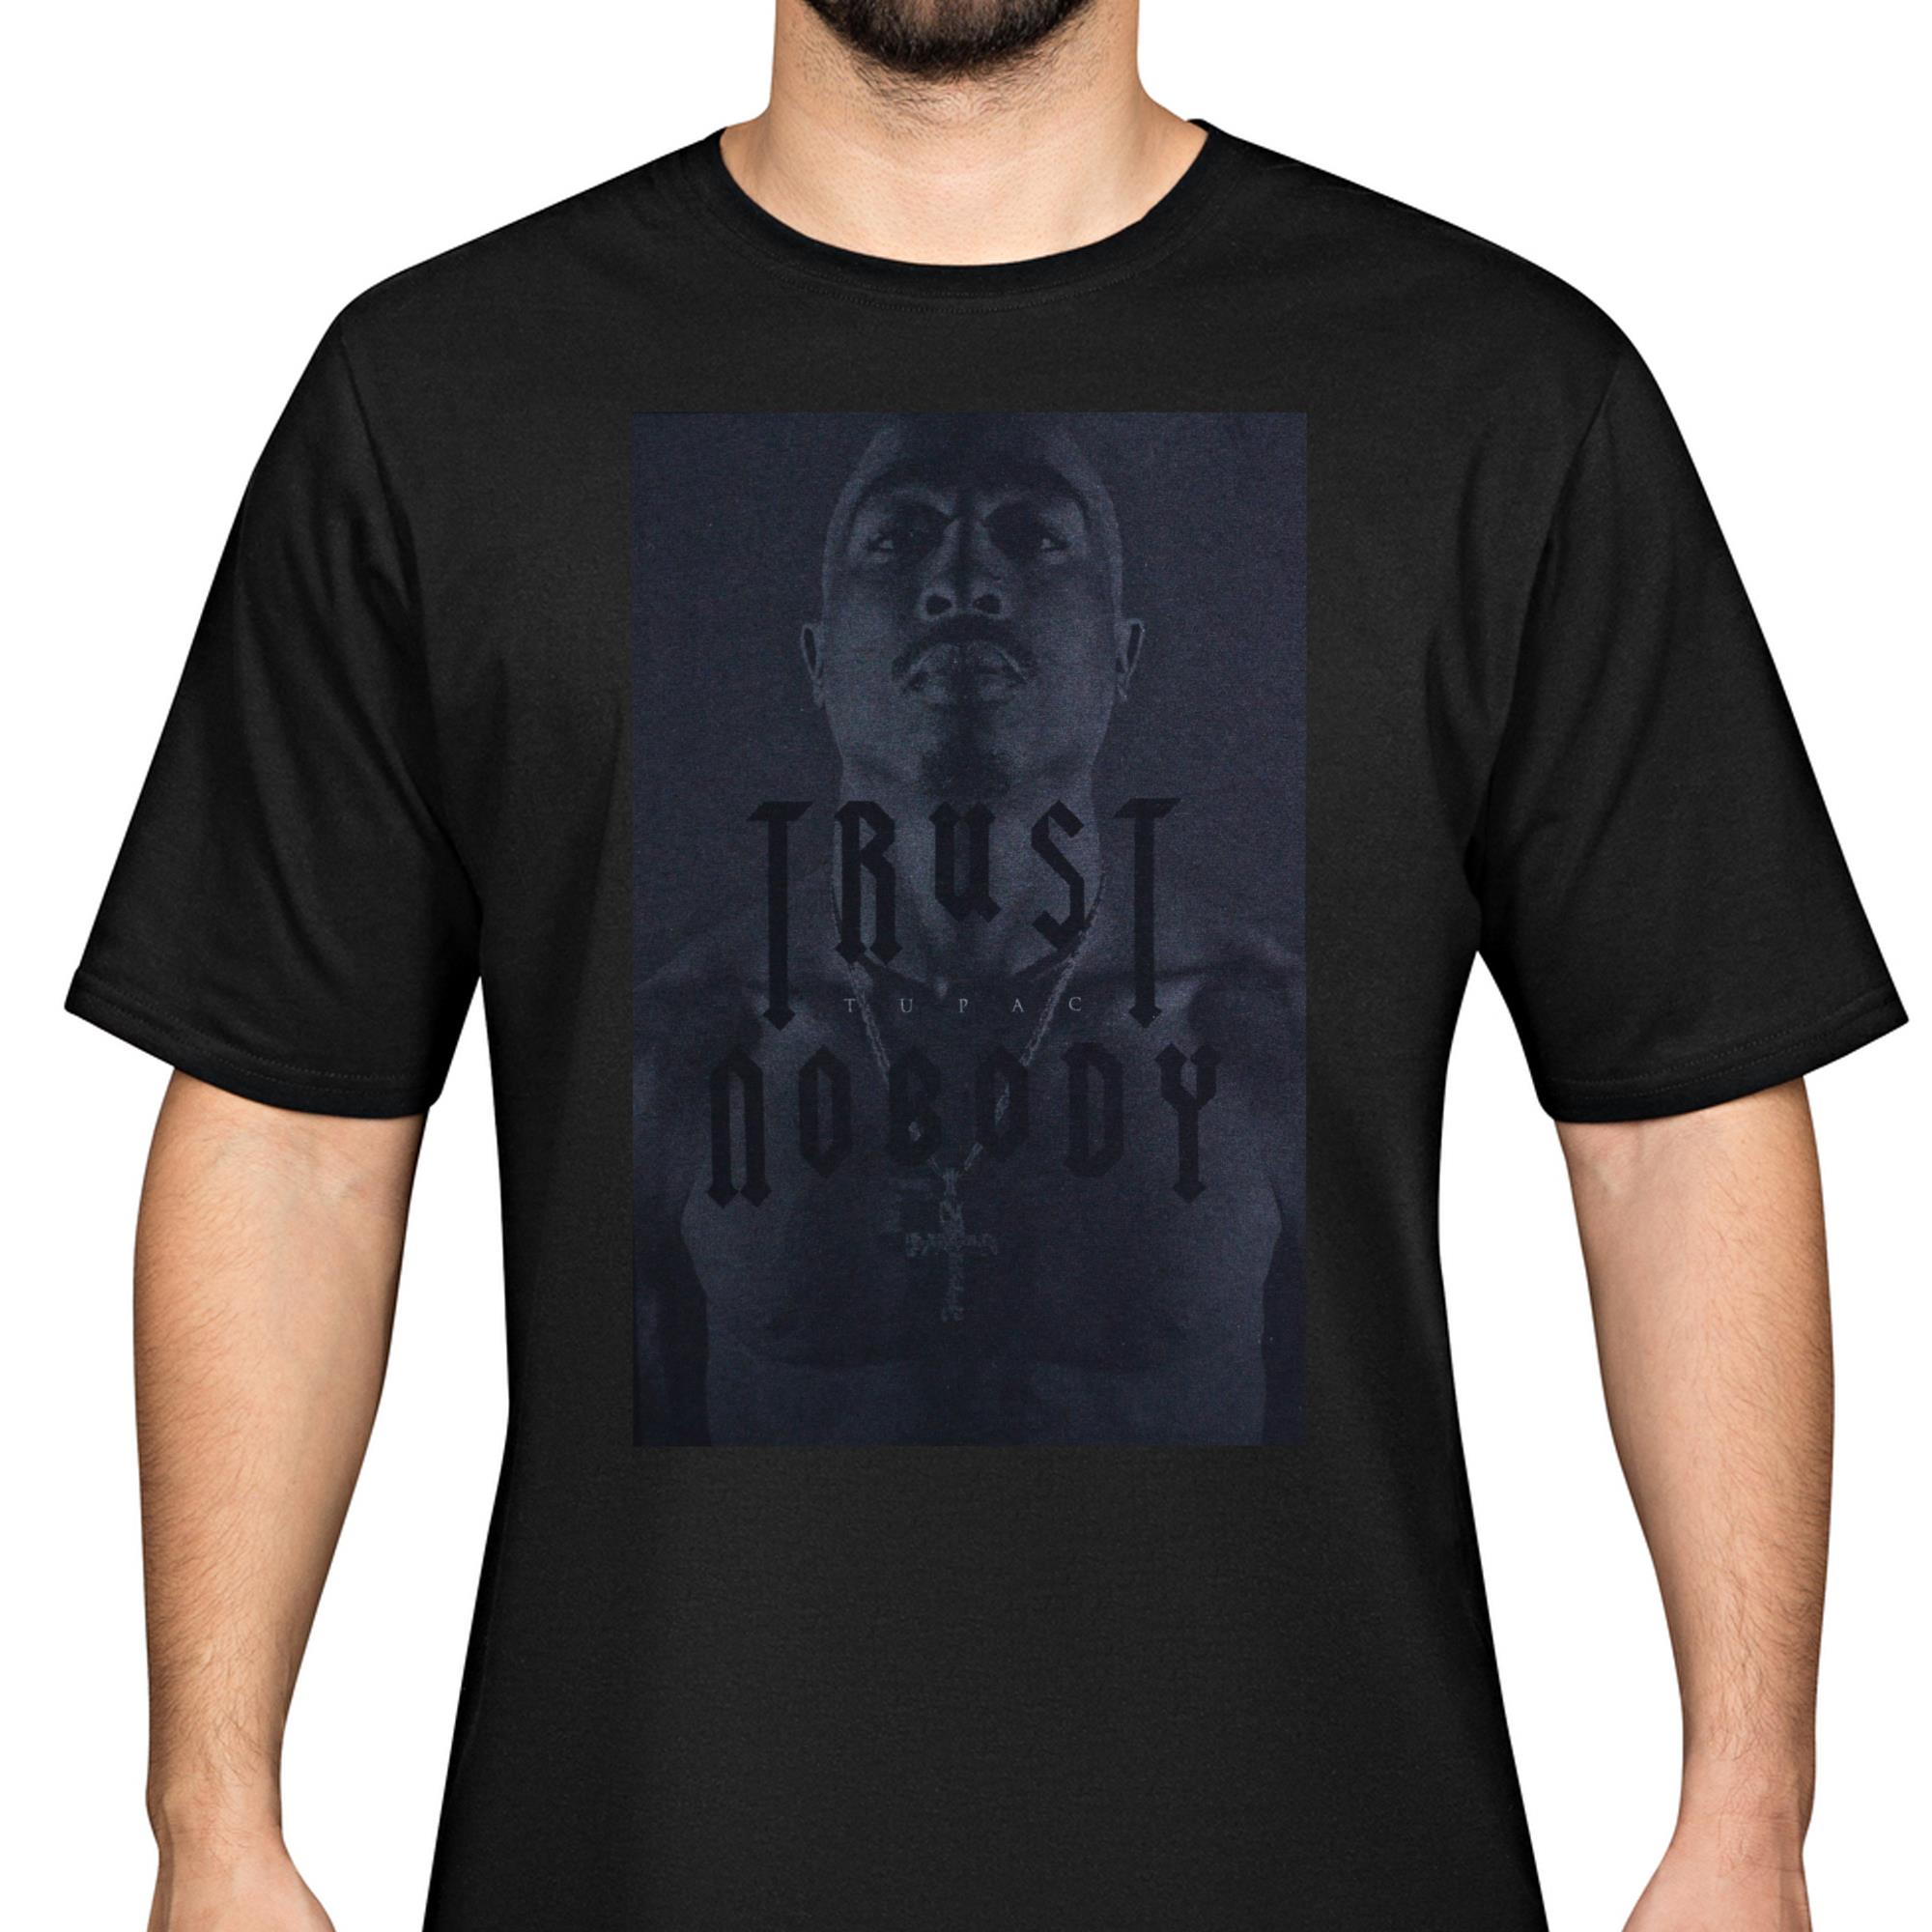 2pac Trust Nobody T-Shirt